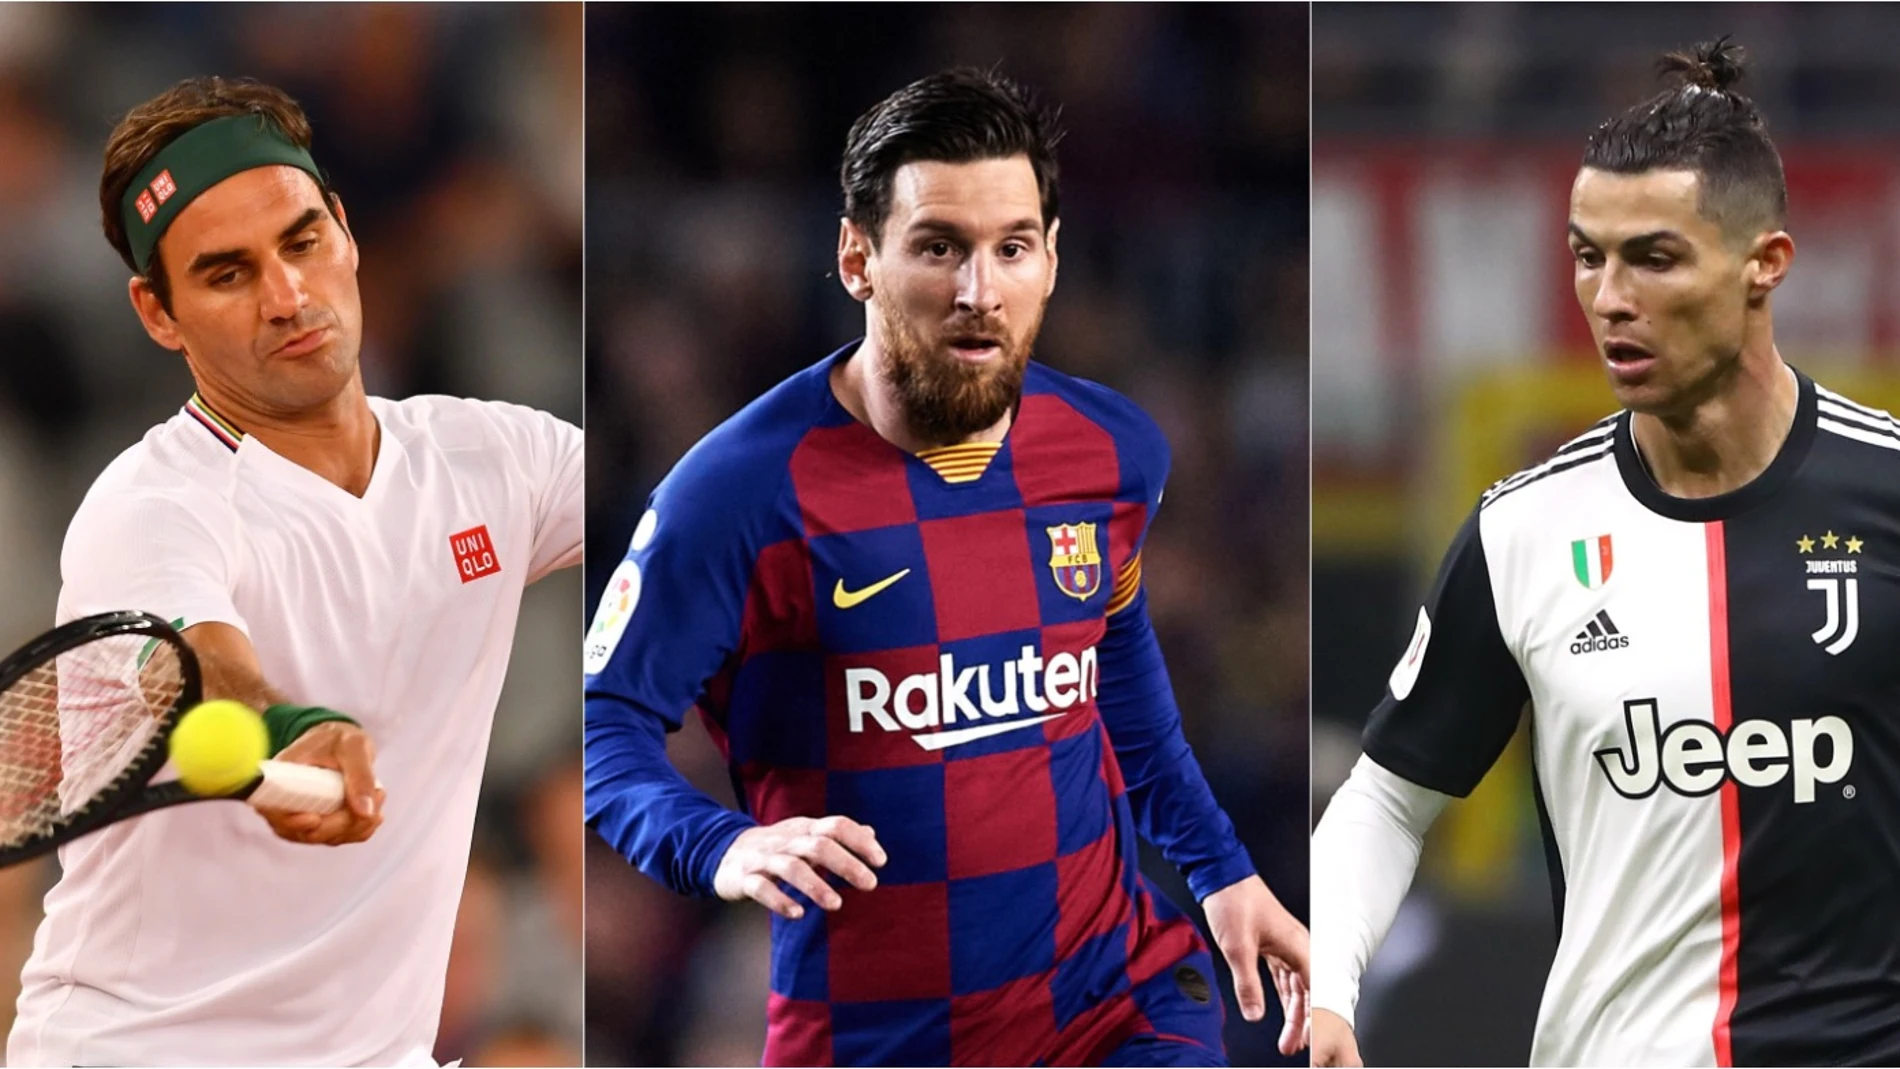 Roger Federer, Cristiano Ronaldo, Leo Messi... La lista completa de los deportistas mejor pagados del mundo 